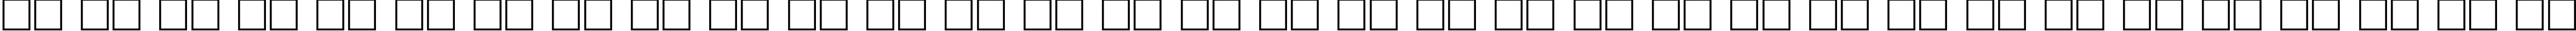 Пример написания русского алфавита шрифтом CourierCTT_60